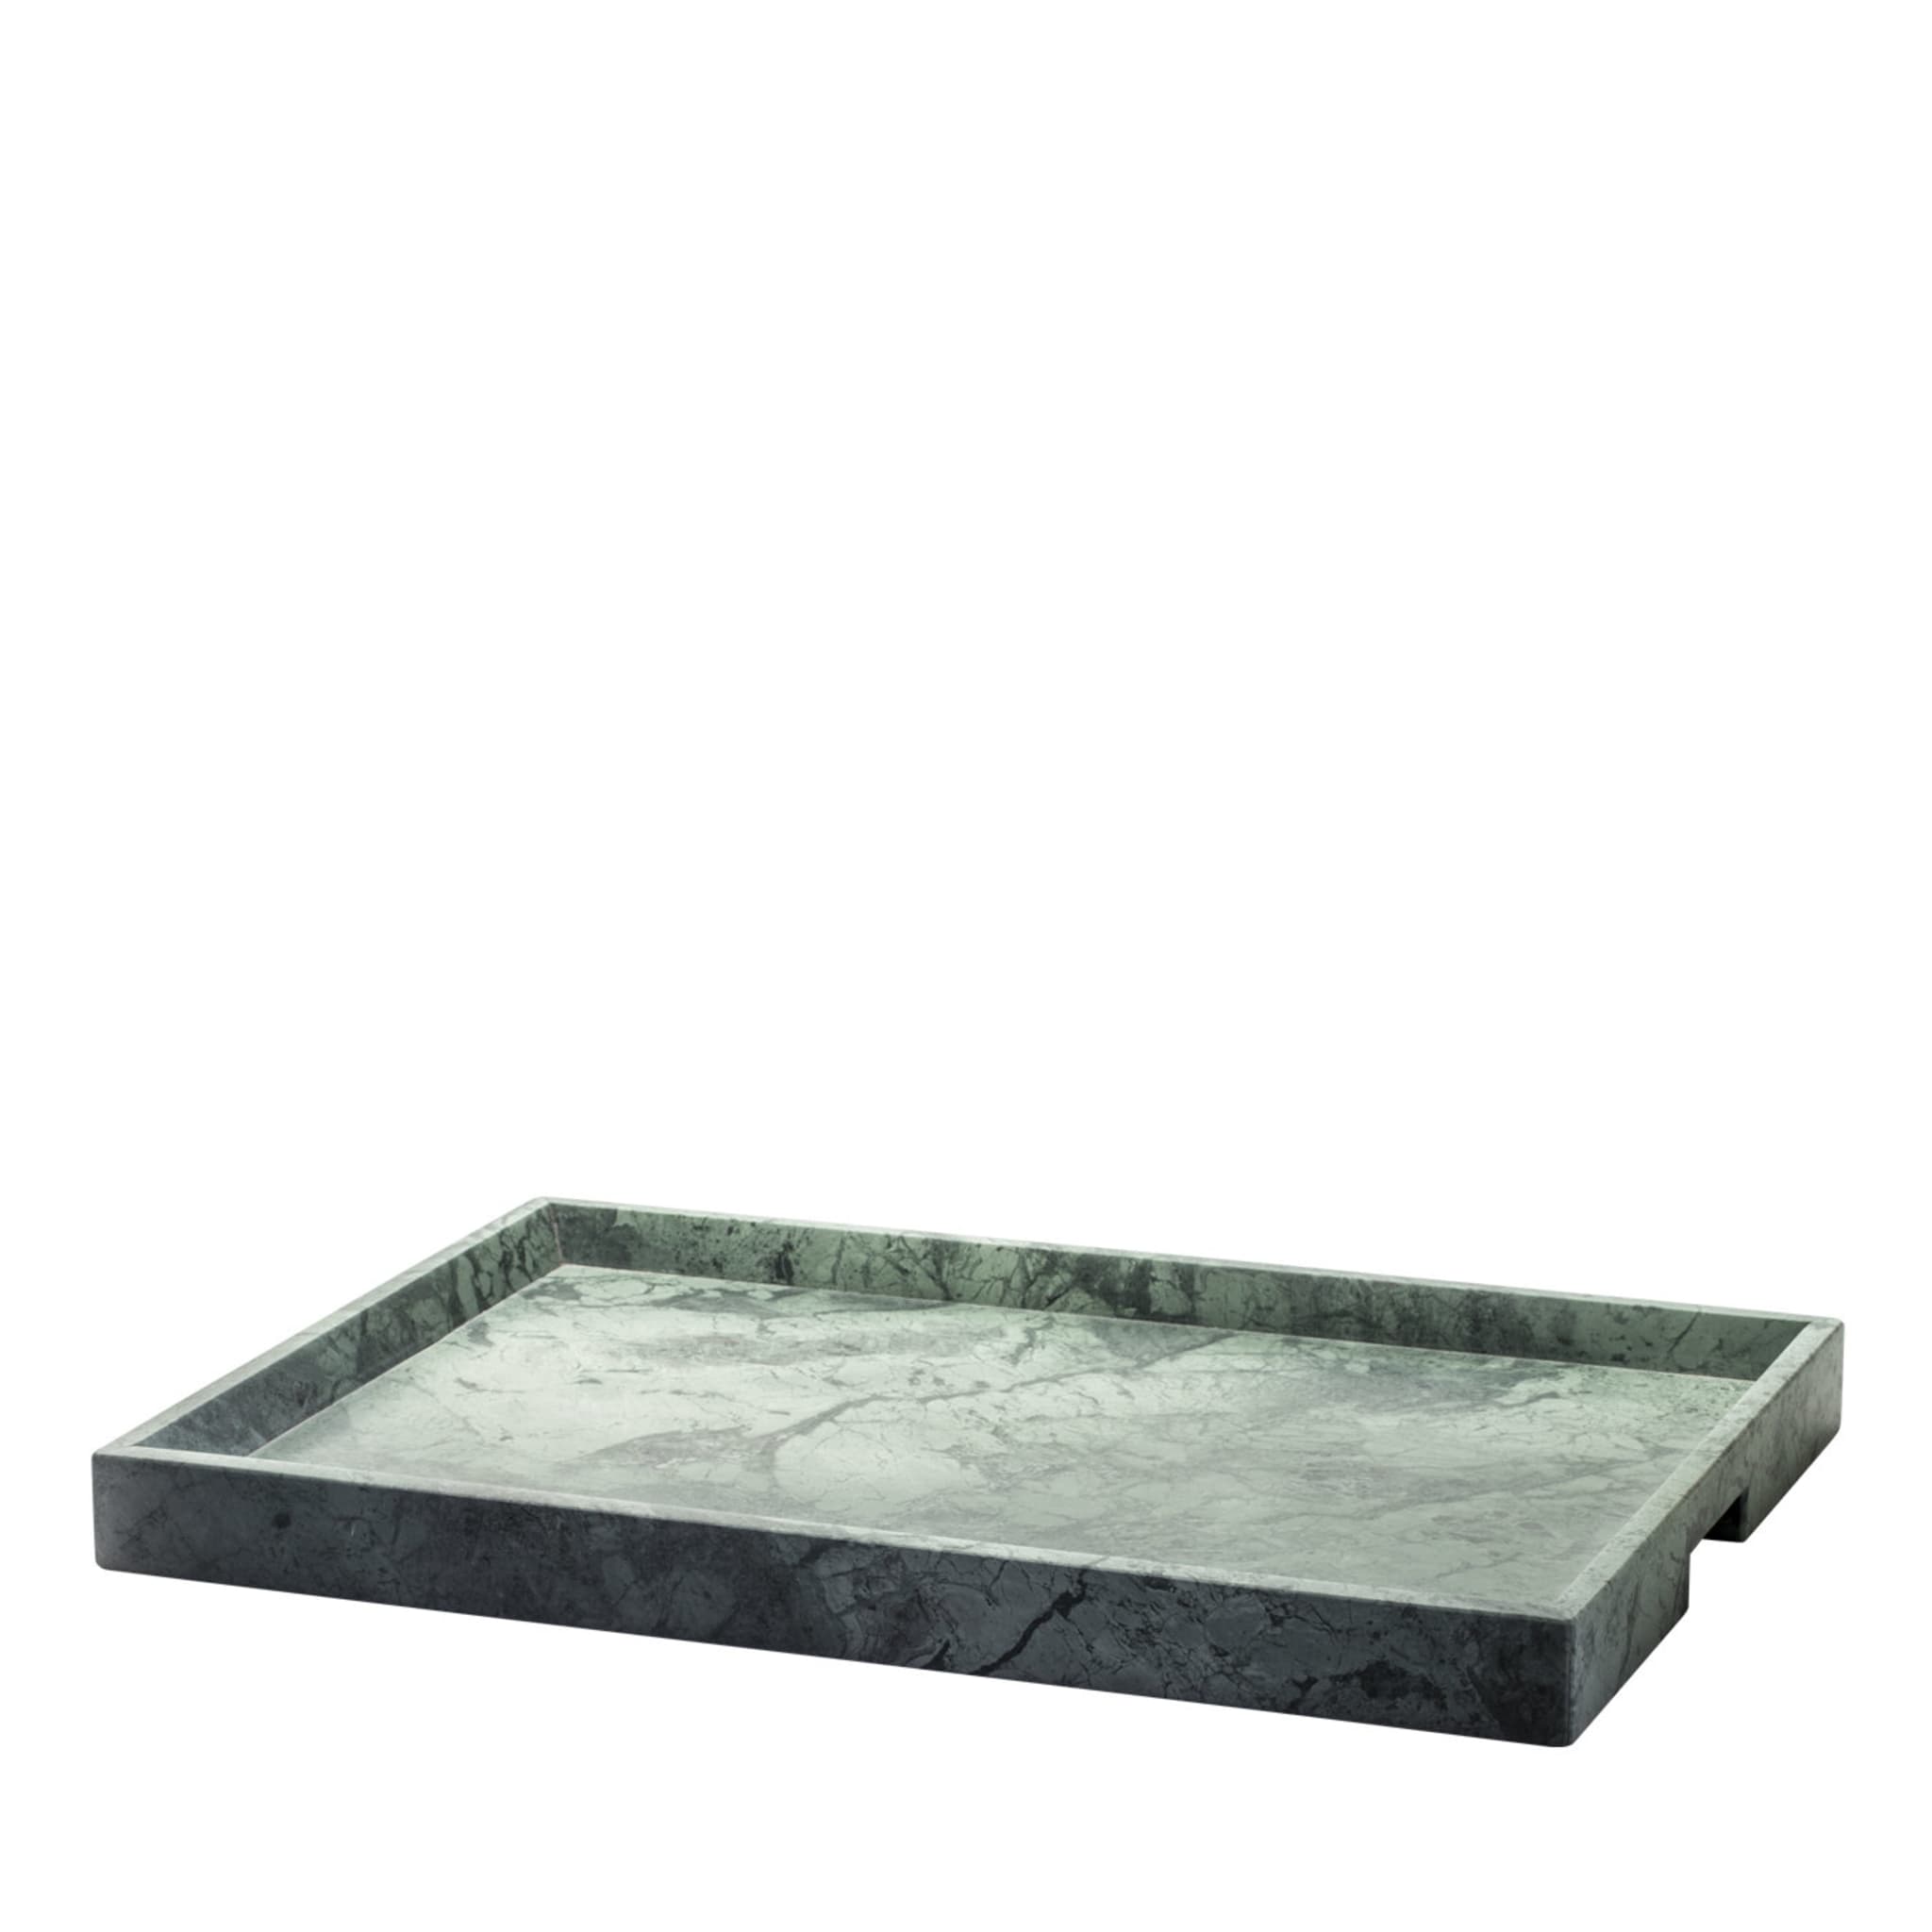 Convivio Maxi Solid Tray in Green Guatemala Marble - Main view